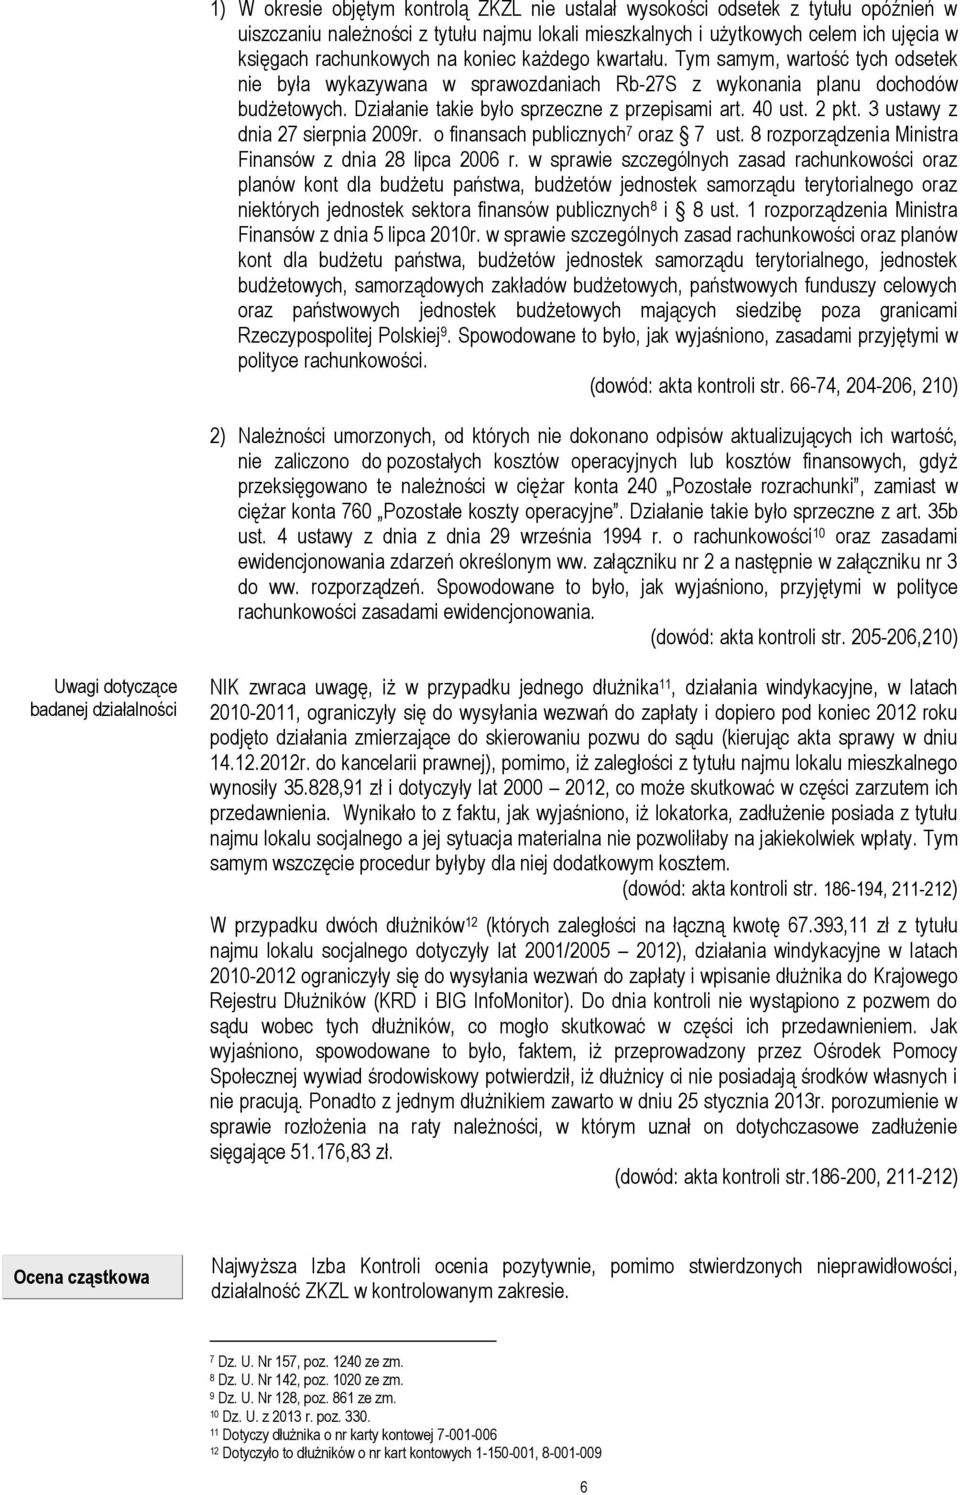 2 pkt. 3 ustawy z dnia 27 sierpnia 2009r. o finansach publicznych 7 oraz 7 ust. 8 rozporządzenia Ministra Finansów z dnia 28 lipca 2006 r.